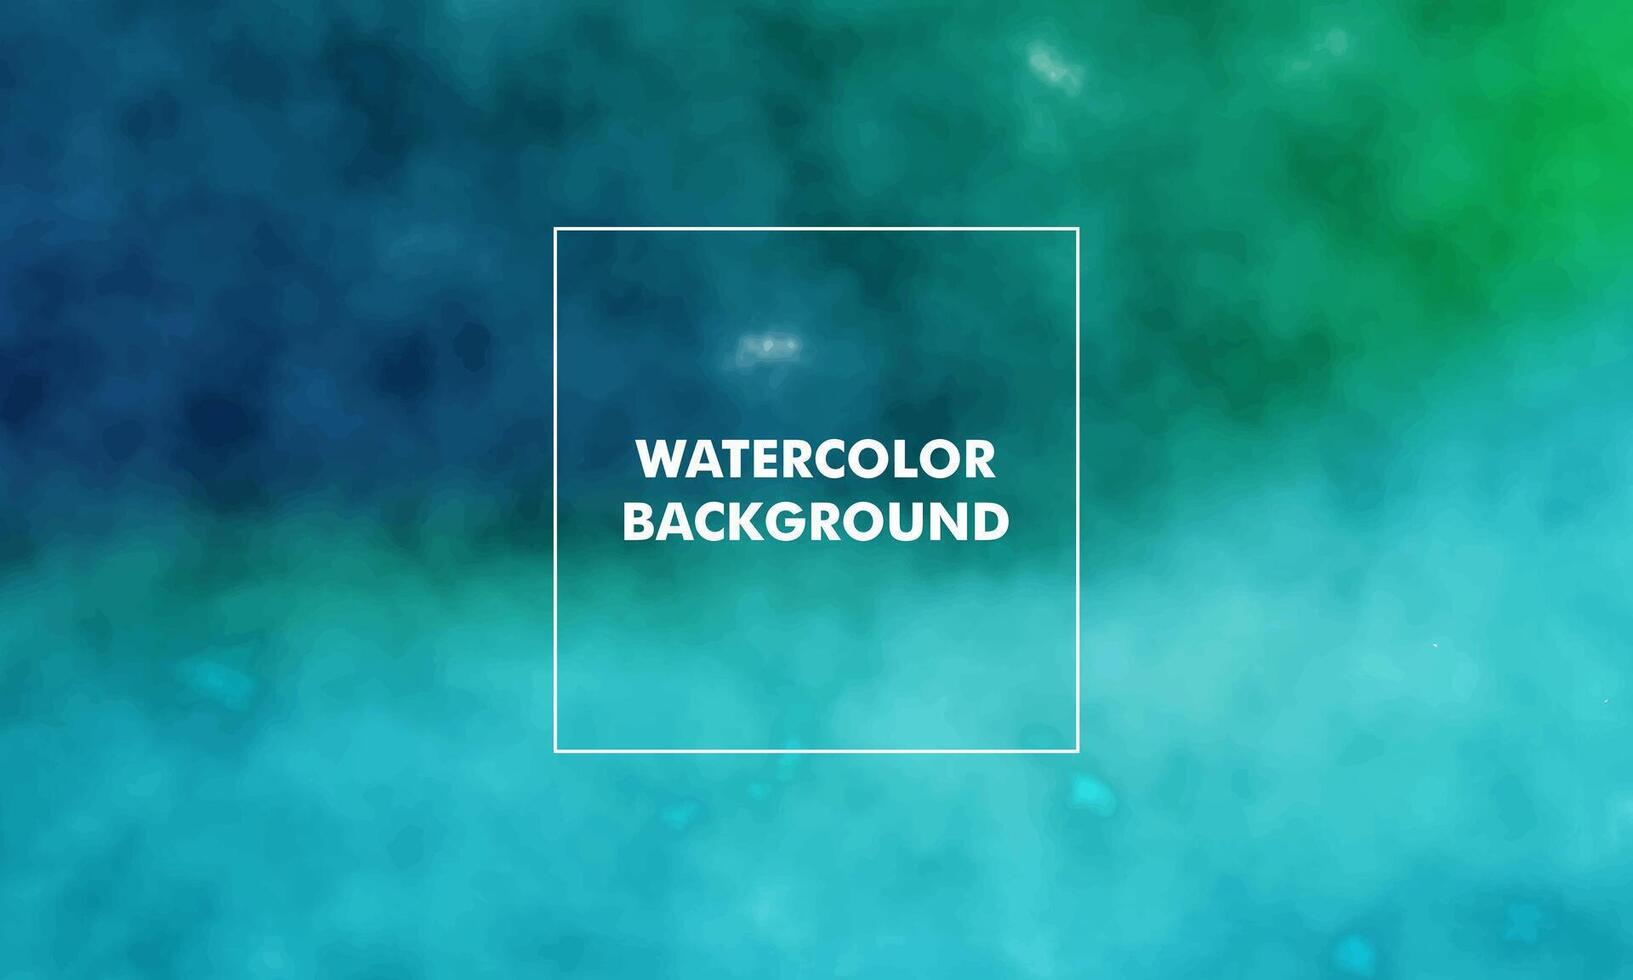 Gradient abstrakt texturiert Pastell- Aquarell Hintergrund mit Schönheit bunt Farbe vektor